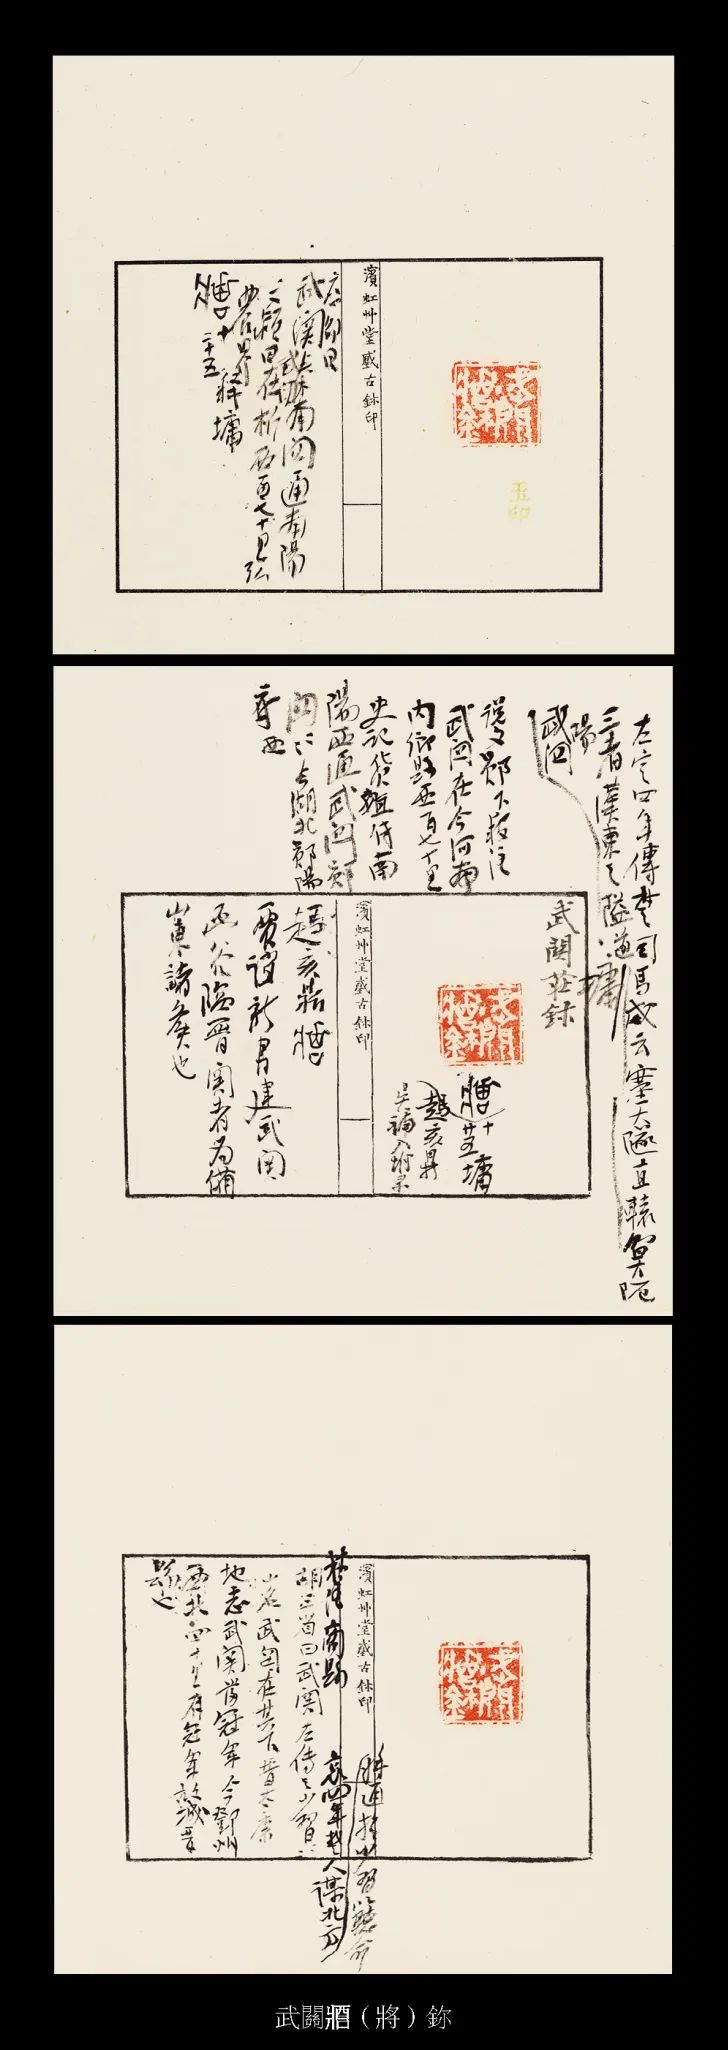 国内最具学术与艺术价值的玺印收藏集合体之一《古物影——黄宾虹古玺印收藏集萃》(图43)